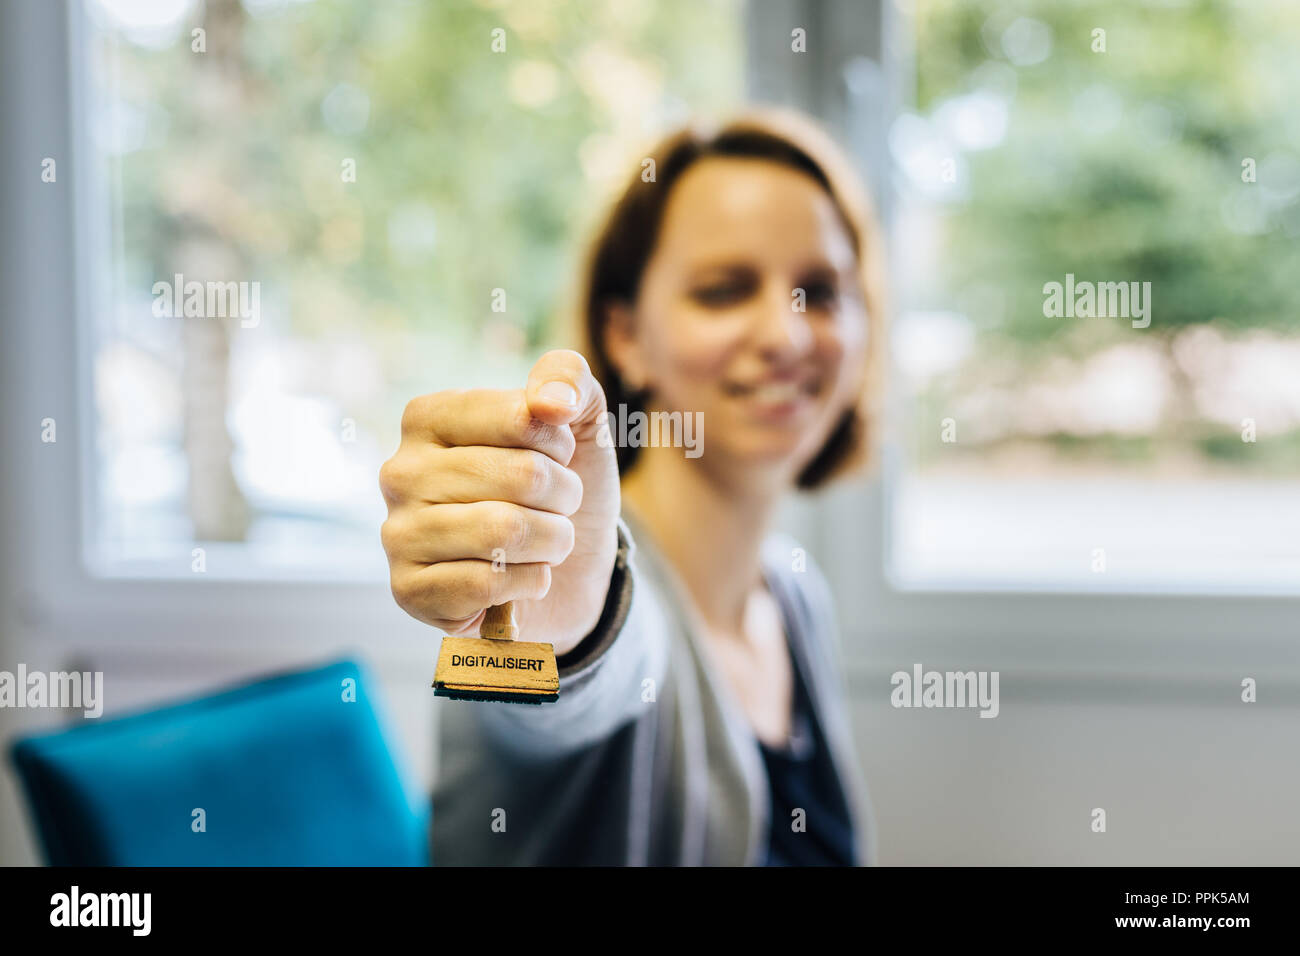 Eine Frau in einem Büro hält ein hölzernes Stempel mit dem deutschen Wort 'digitalisiert', das heißt, in die Kamera igitalized' ', Schärfentiefe Stockfoto